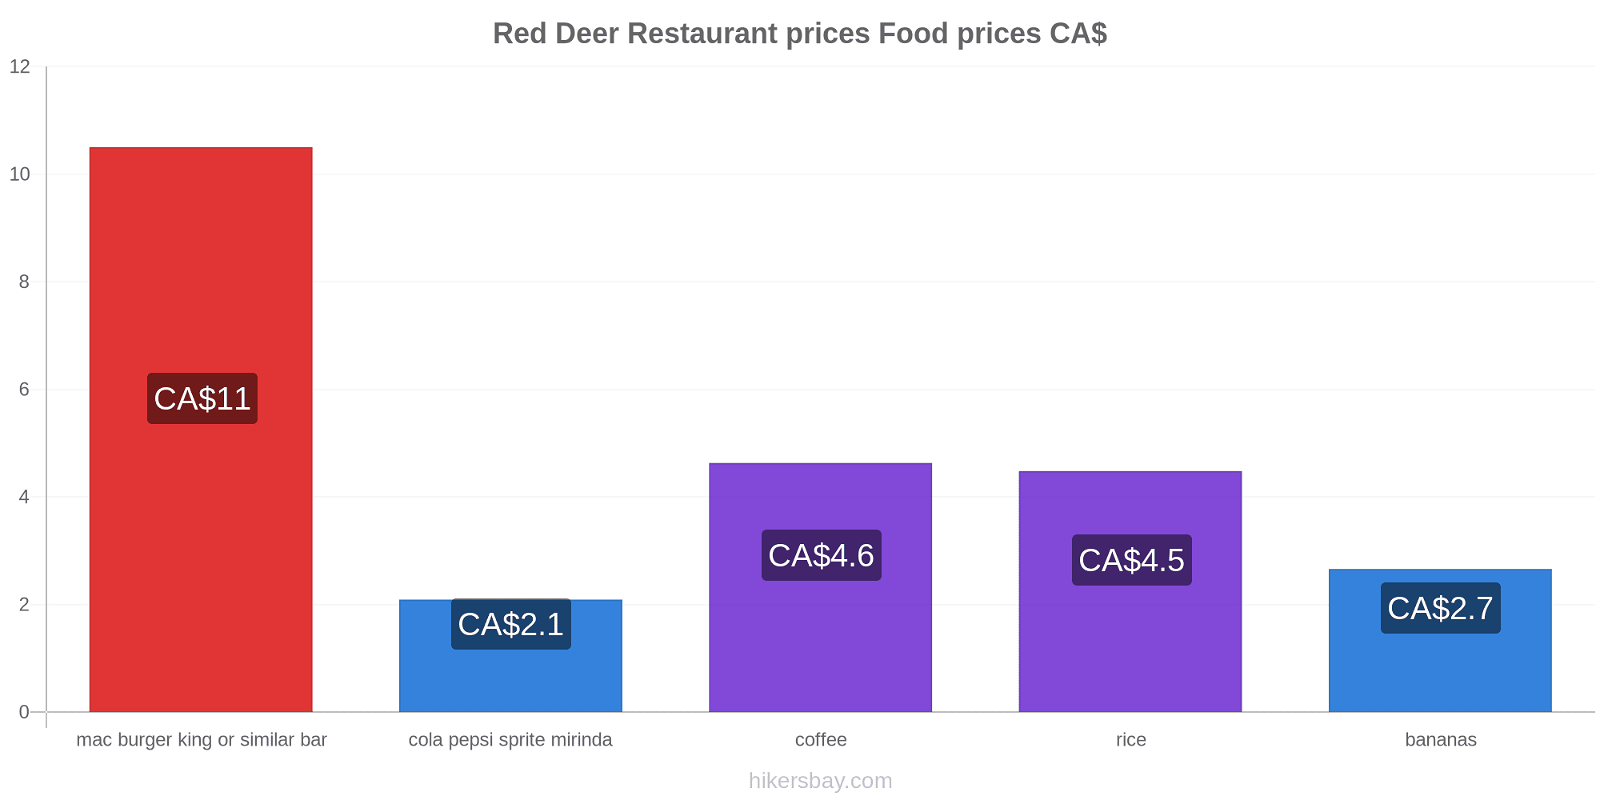 Red Deer price changes hikersbay.com